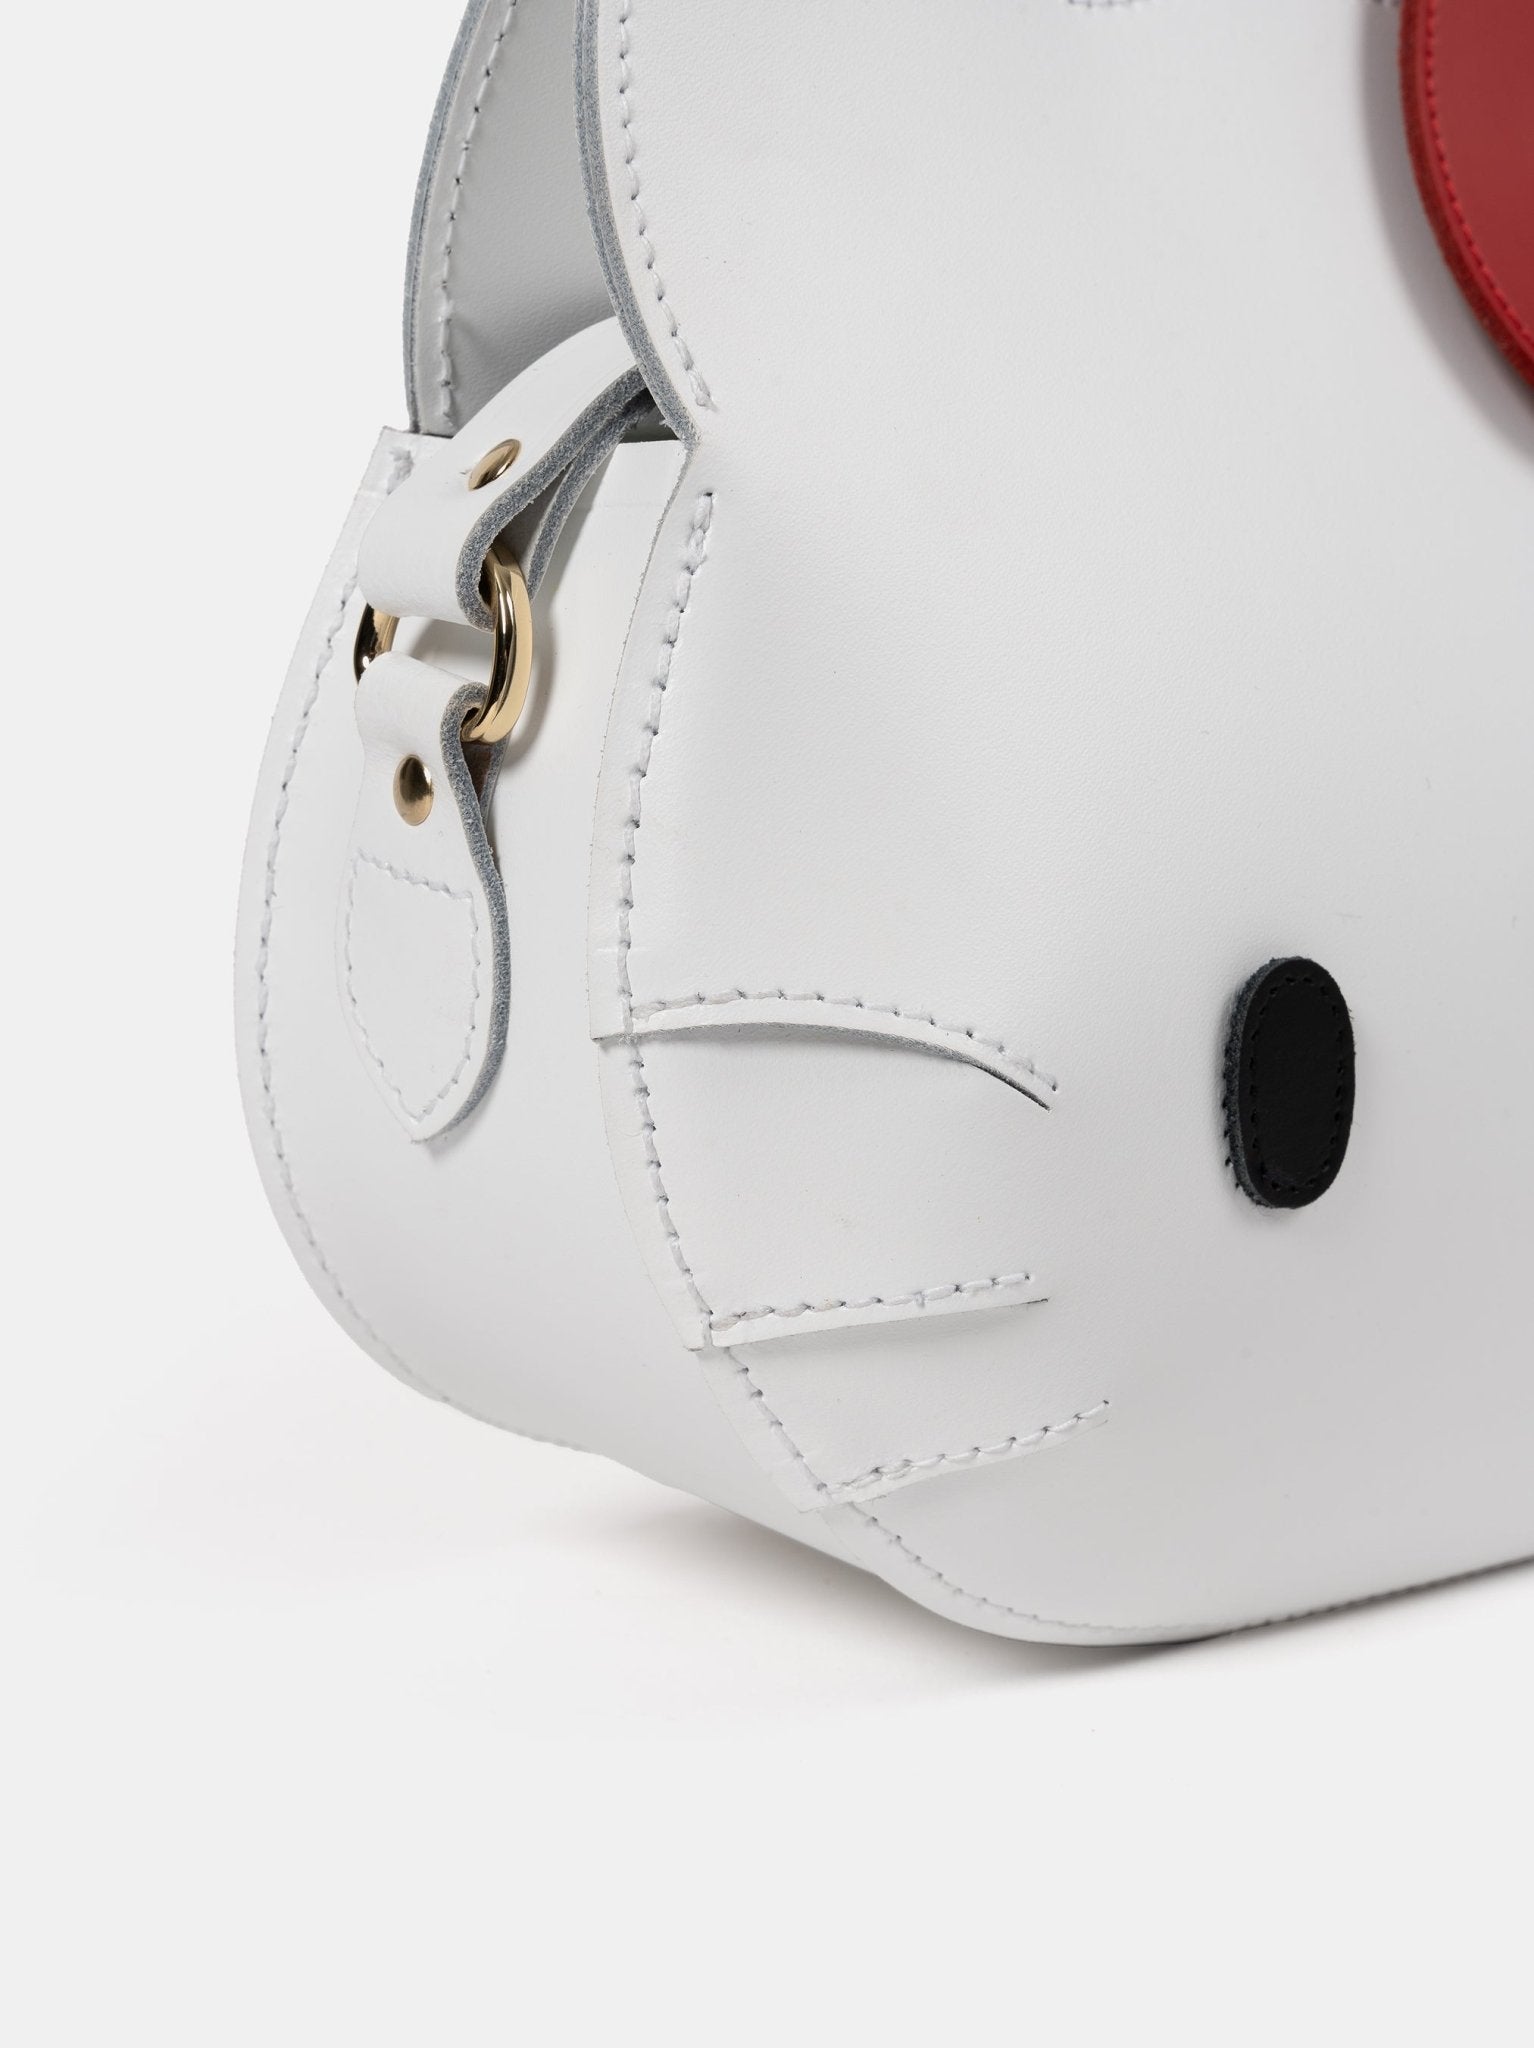 The Hello Kitty Face Bag